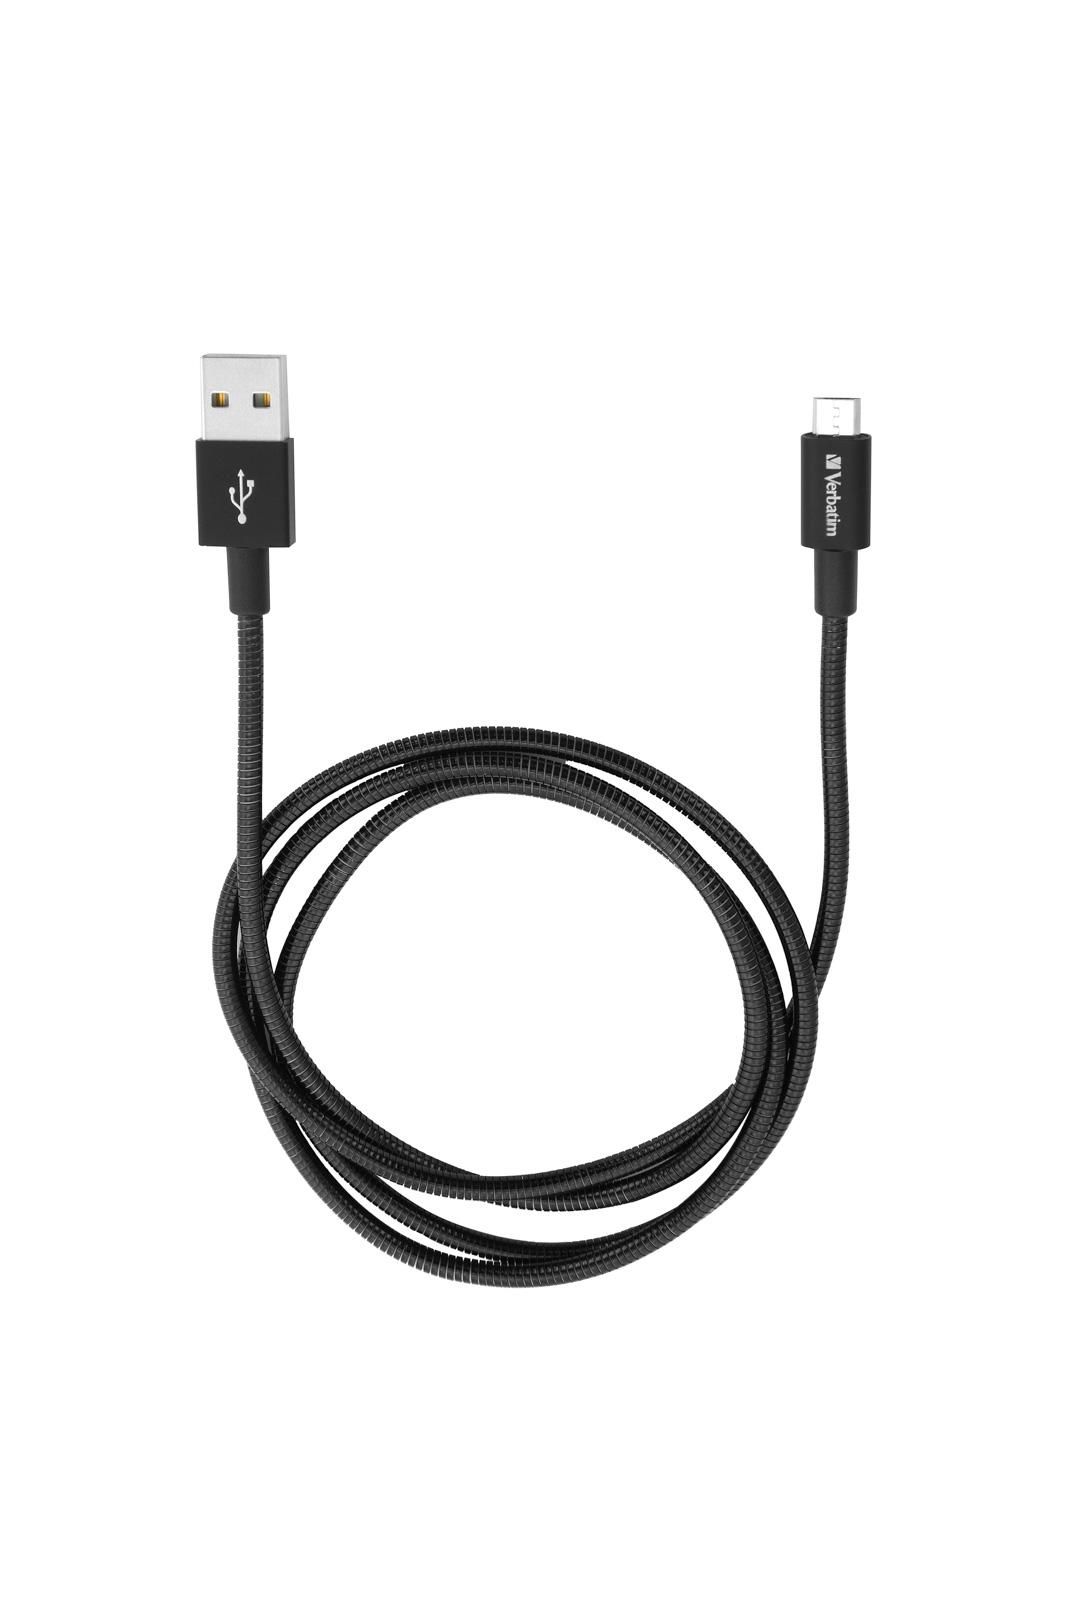 Verbatim 48863 Mirco B USB Cable. Black 